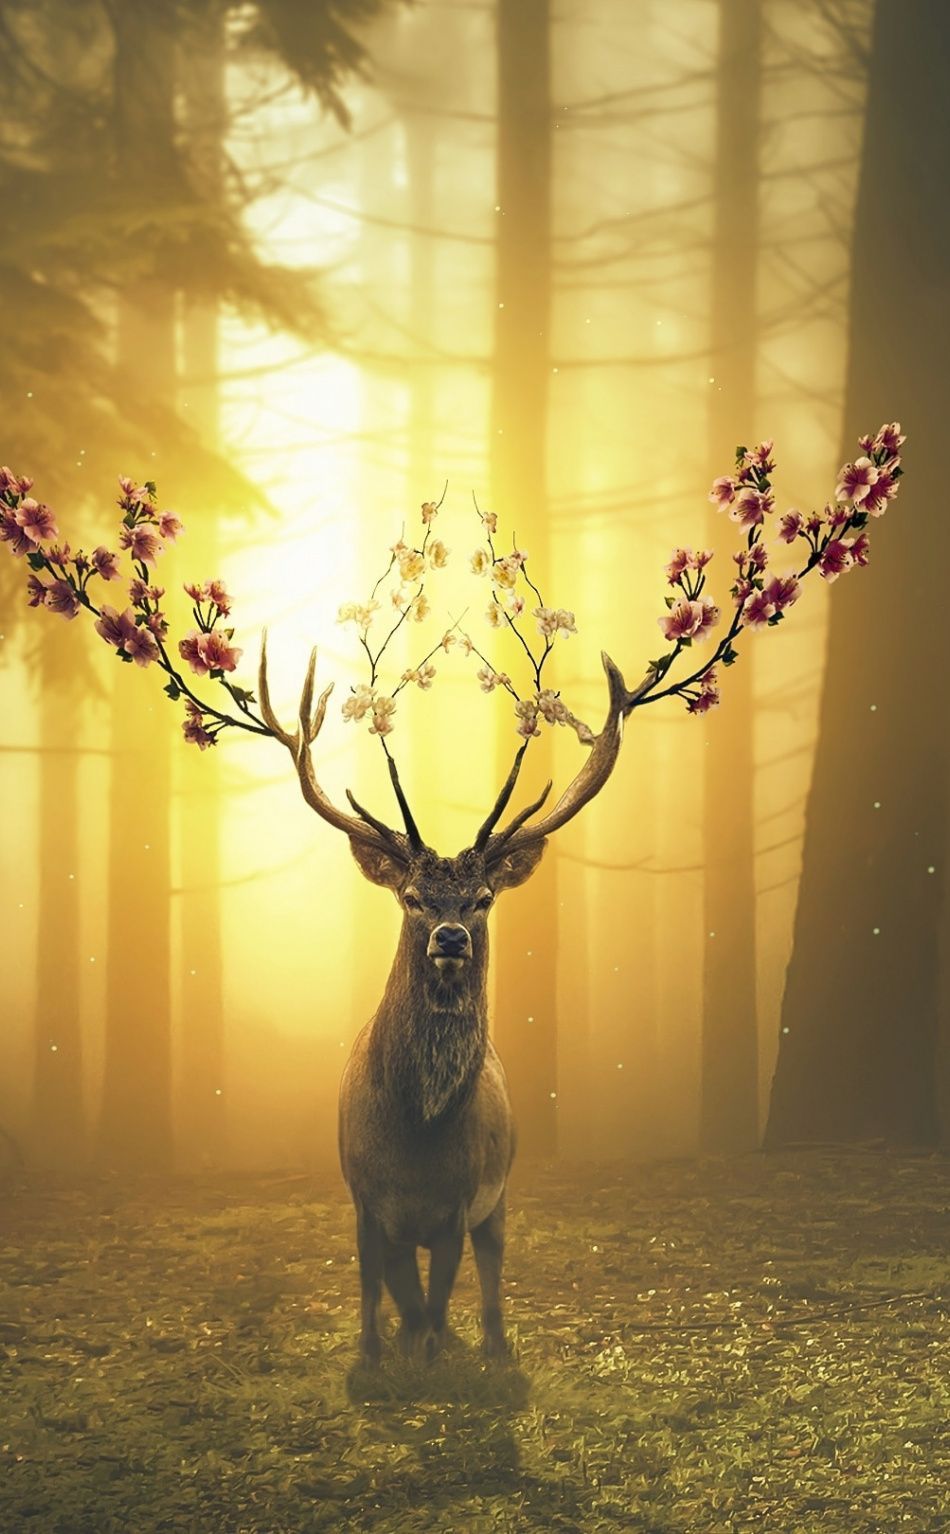 Deer, forest, surreal, 950x1534 wallpaper. Deer wallpaper, Animal